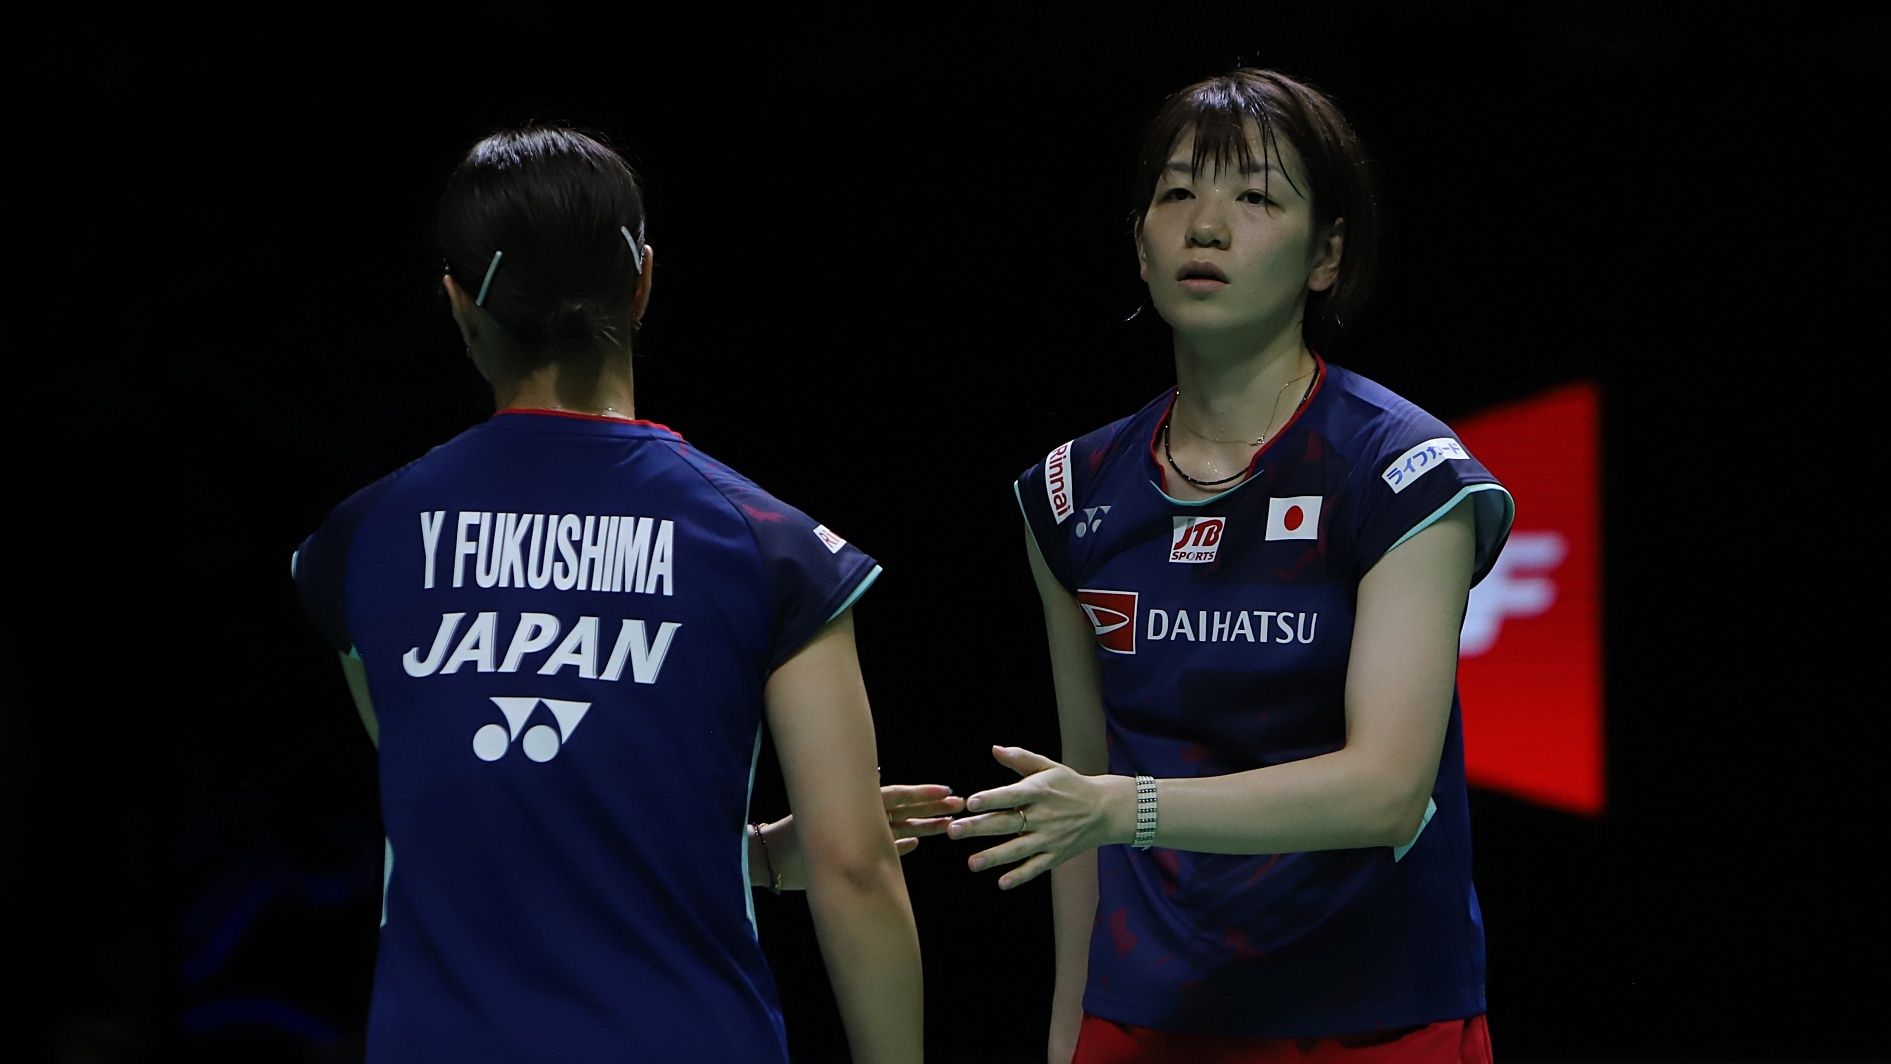 Ganda putri Jepang, Yuki Fukushima/Sayaka Hirota, saat tampil pada final Indonesia Open 2022 yang digelar di Istora Senayan, Jakarta pada Minggu (19/6/2022).